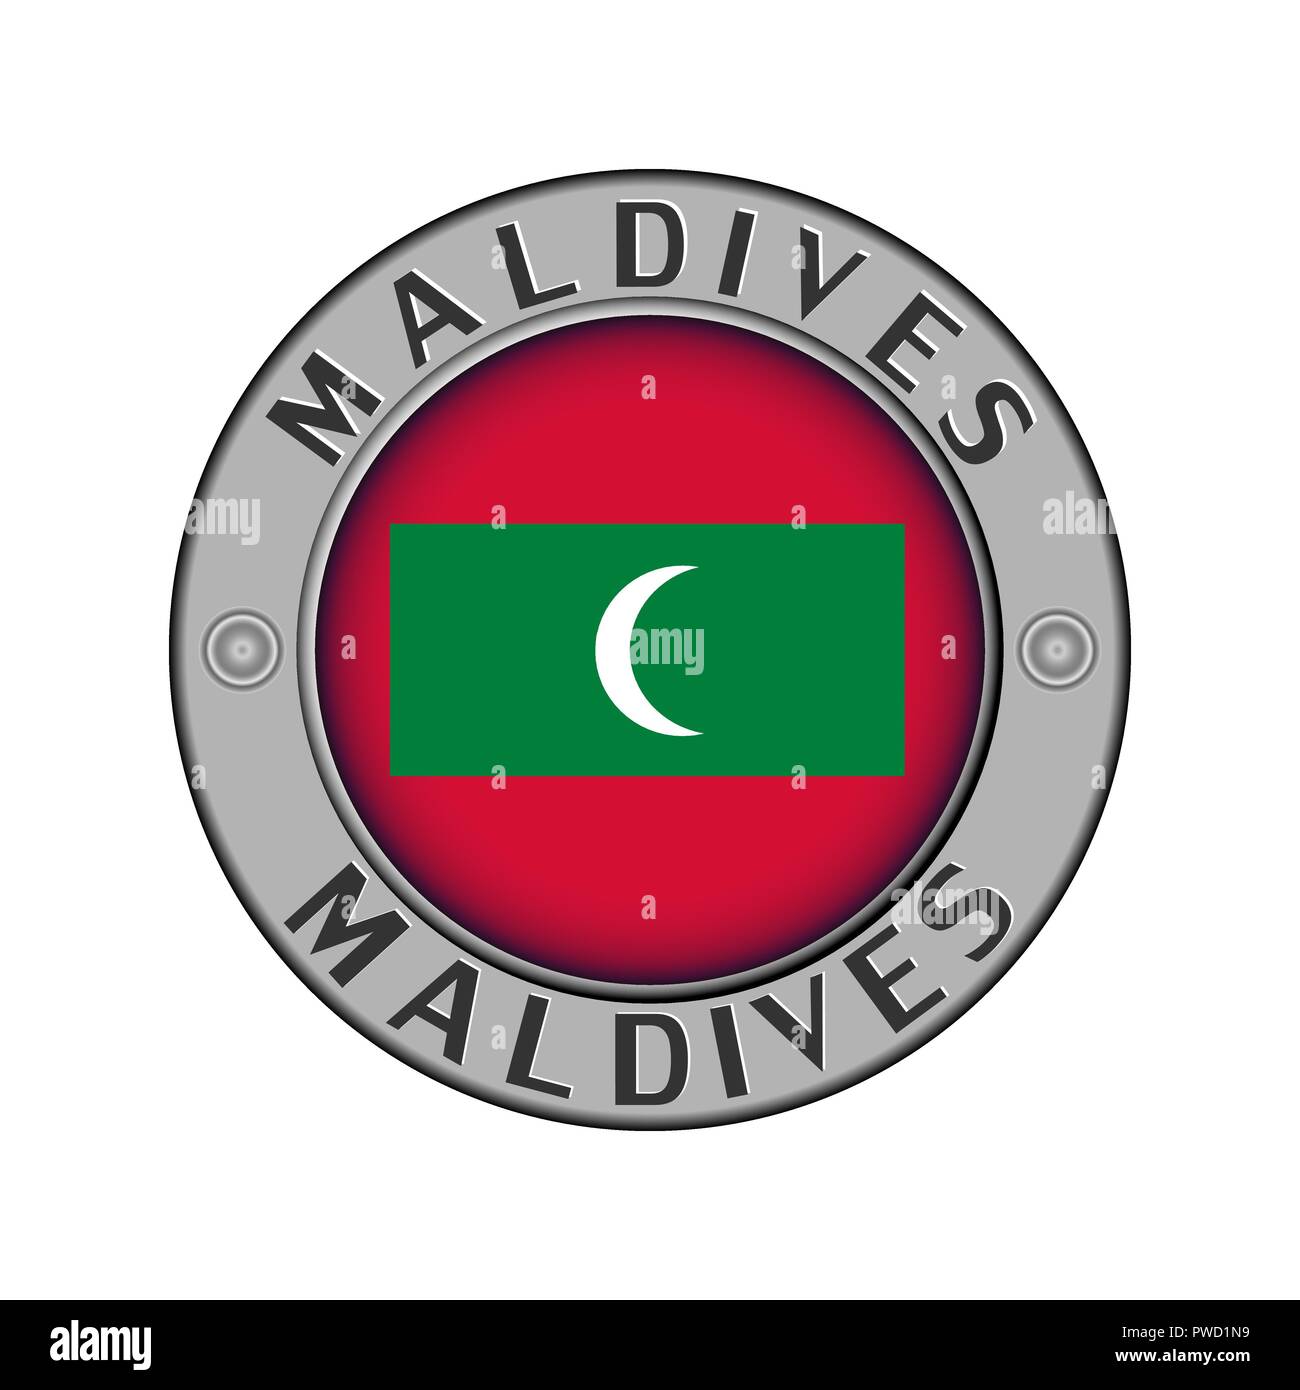 Rotondo di metallo medaglione con il nome del paese di Maldive e un indicatore rotondo nel centro Illustrazione Vettoriale